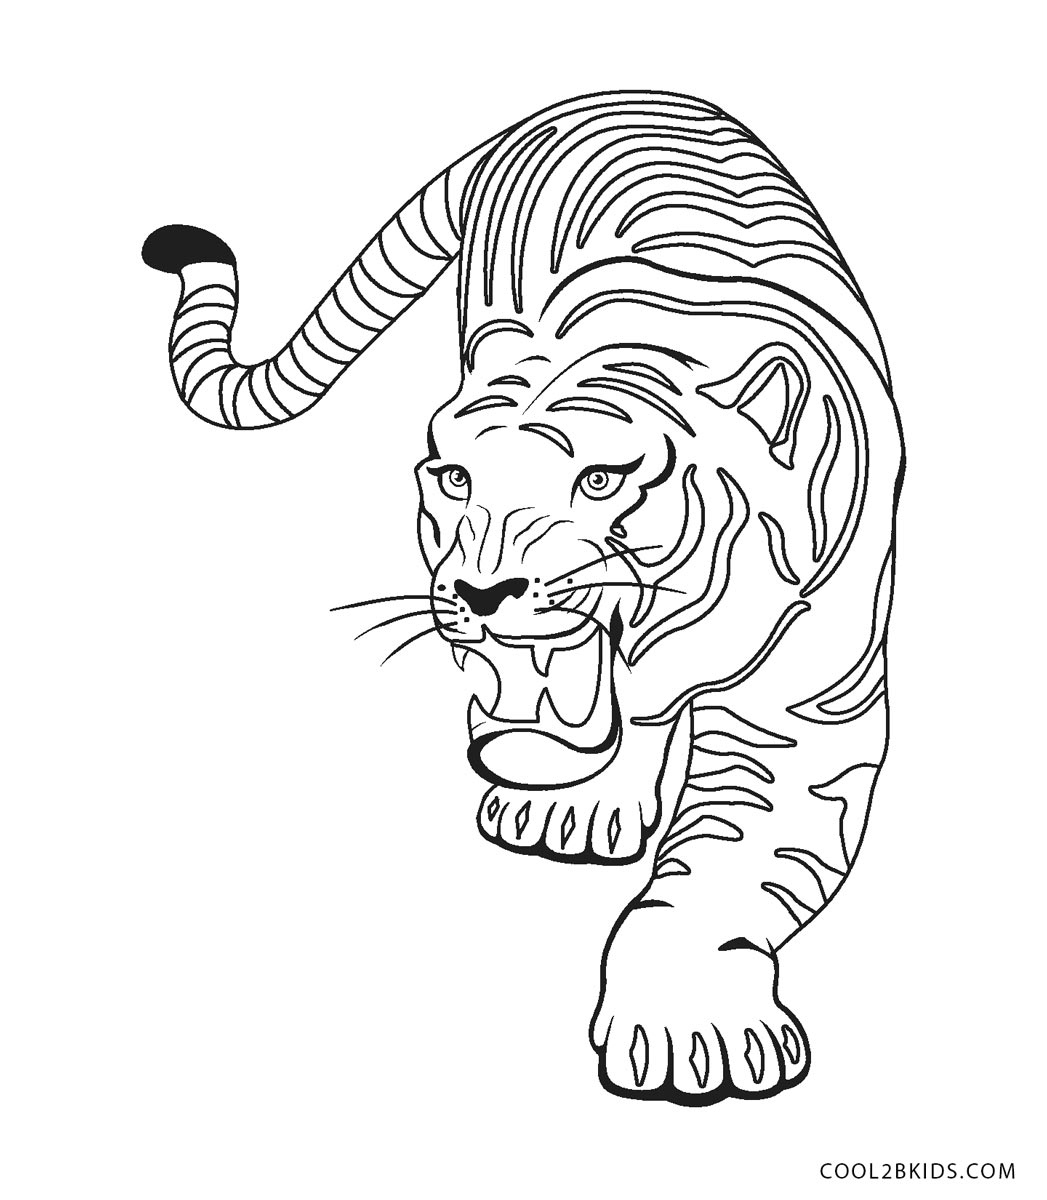 Dibujos de tigre para colorear